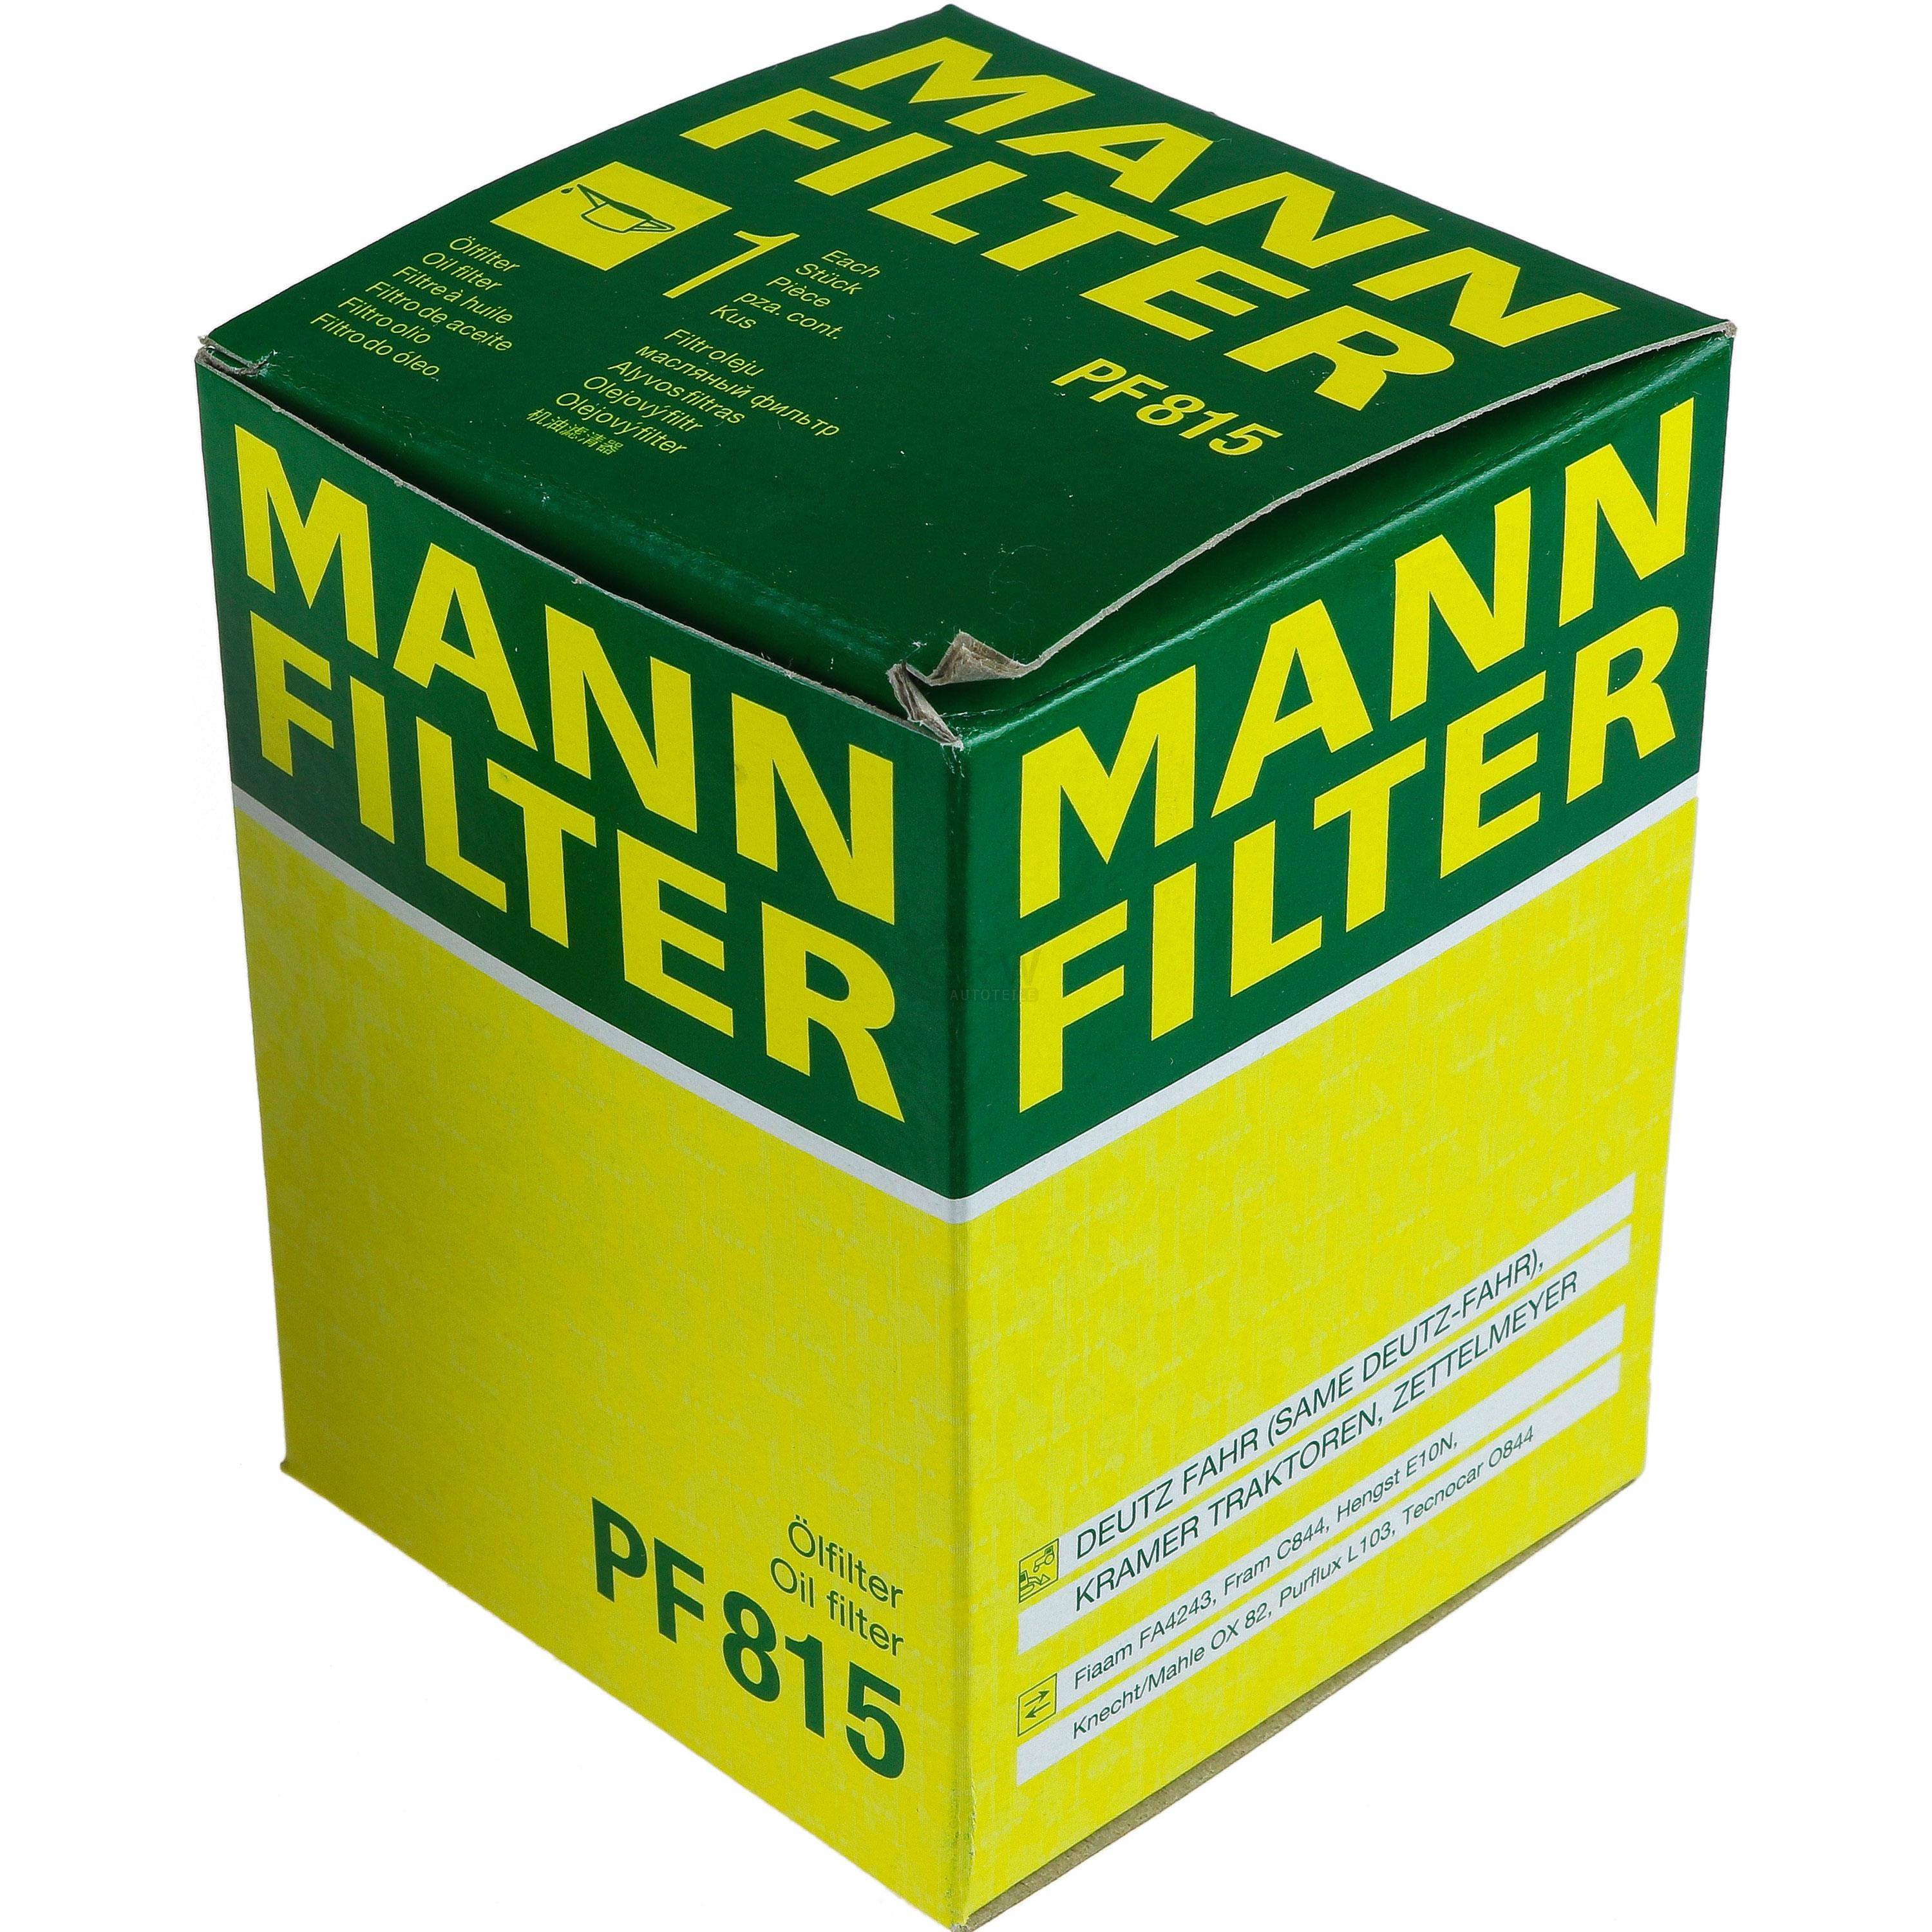 MANN-FILTER Ölfilter Oelfilter PF 815 Oil Filter